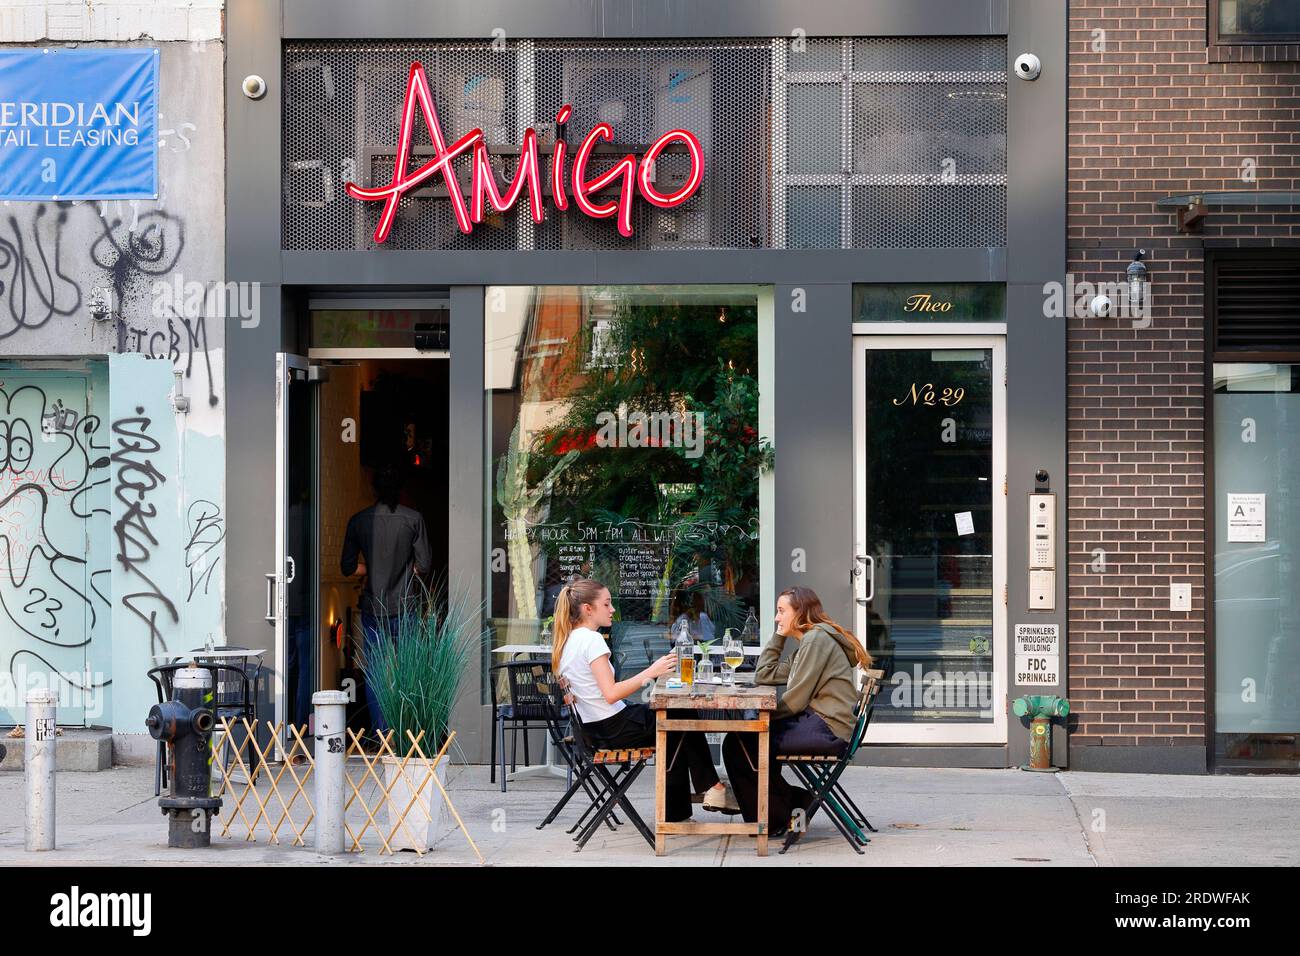 Amigo by Nai, 29 2. Ave, New York, NYC, Foto eines mexikanischen Restaurants in Manhattans Lower East Side. Stockfoto